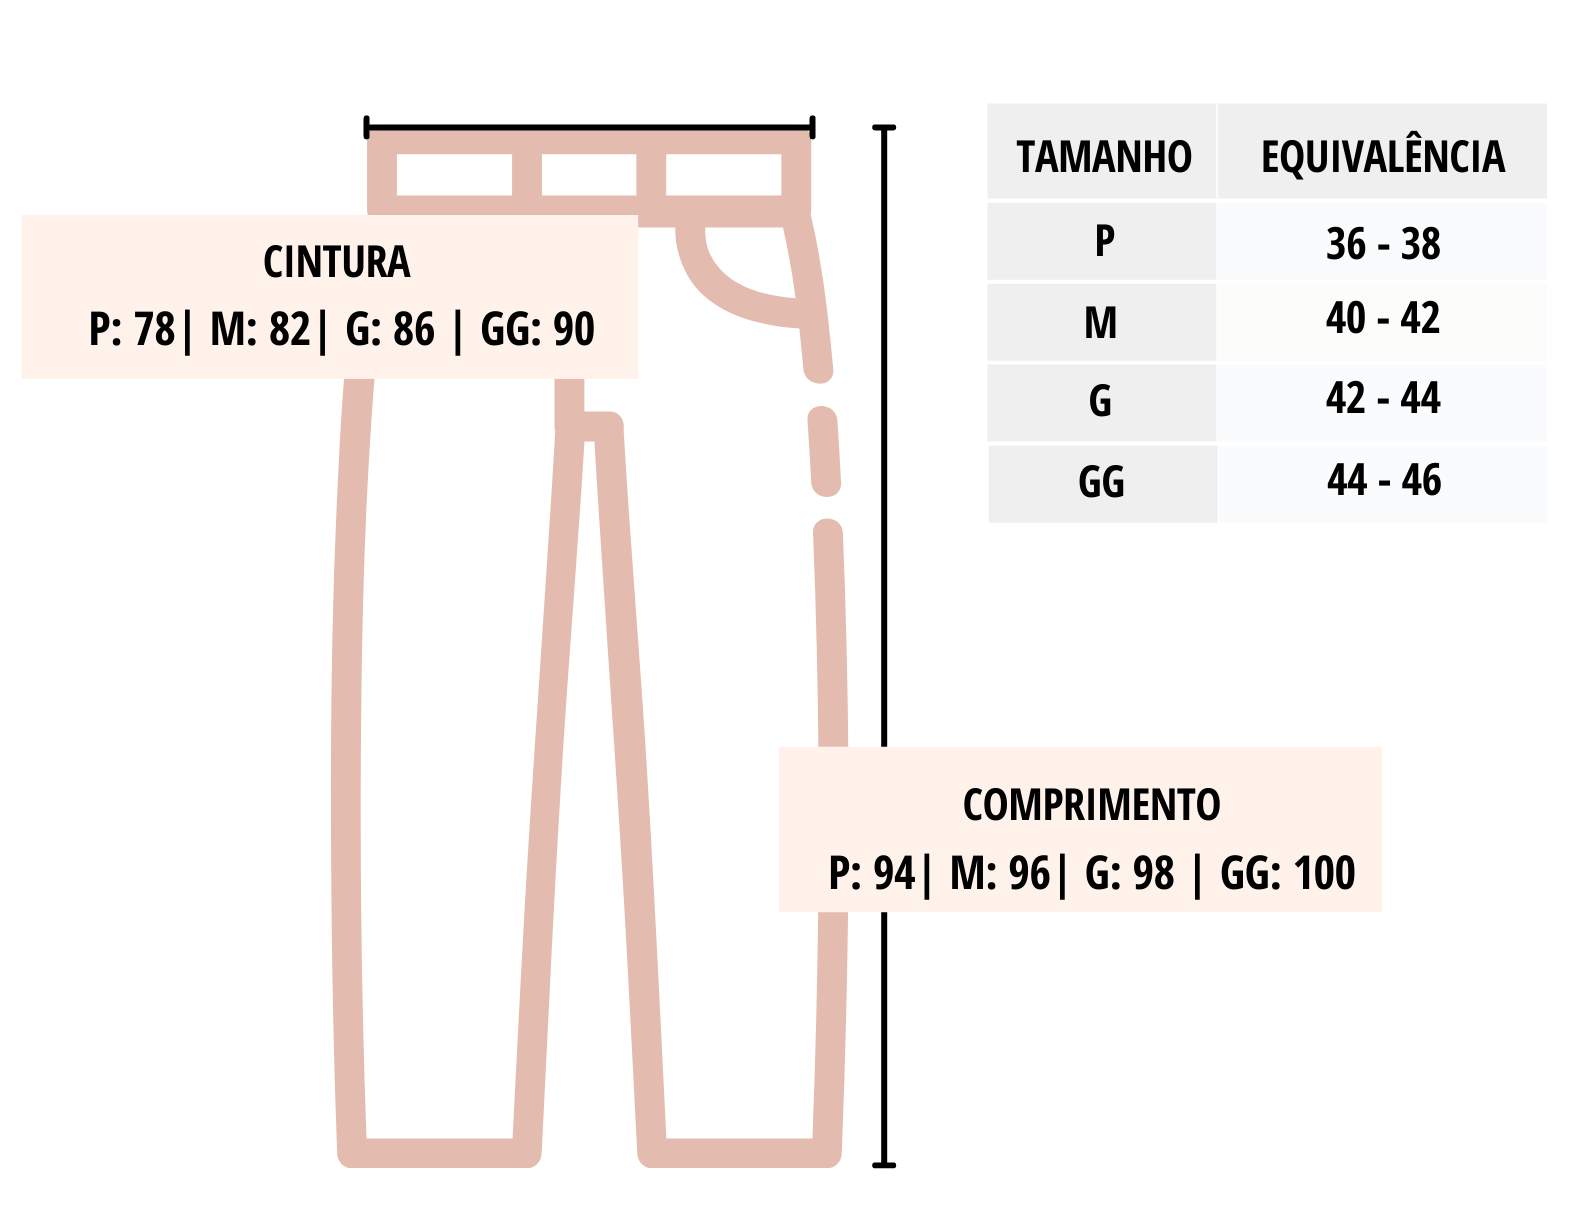 A tabela apresenta as medidas aproximadas da saia